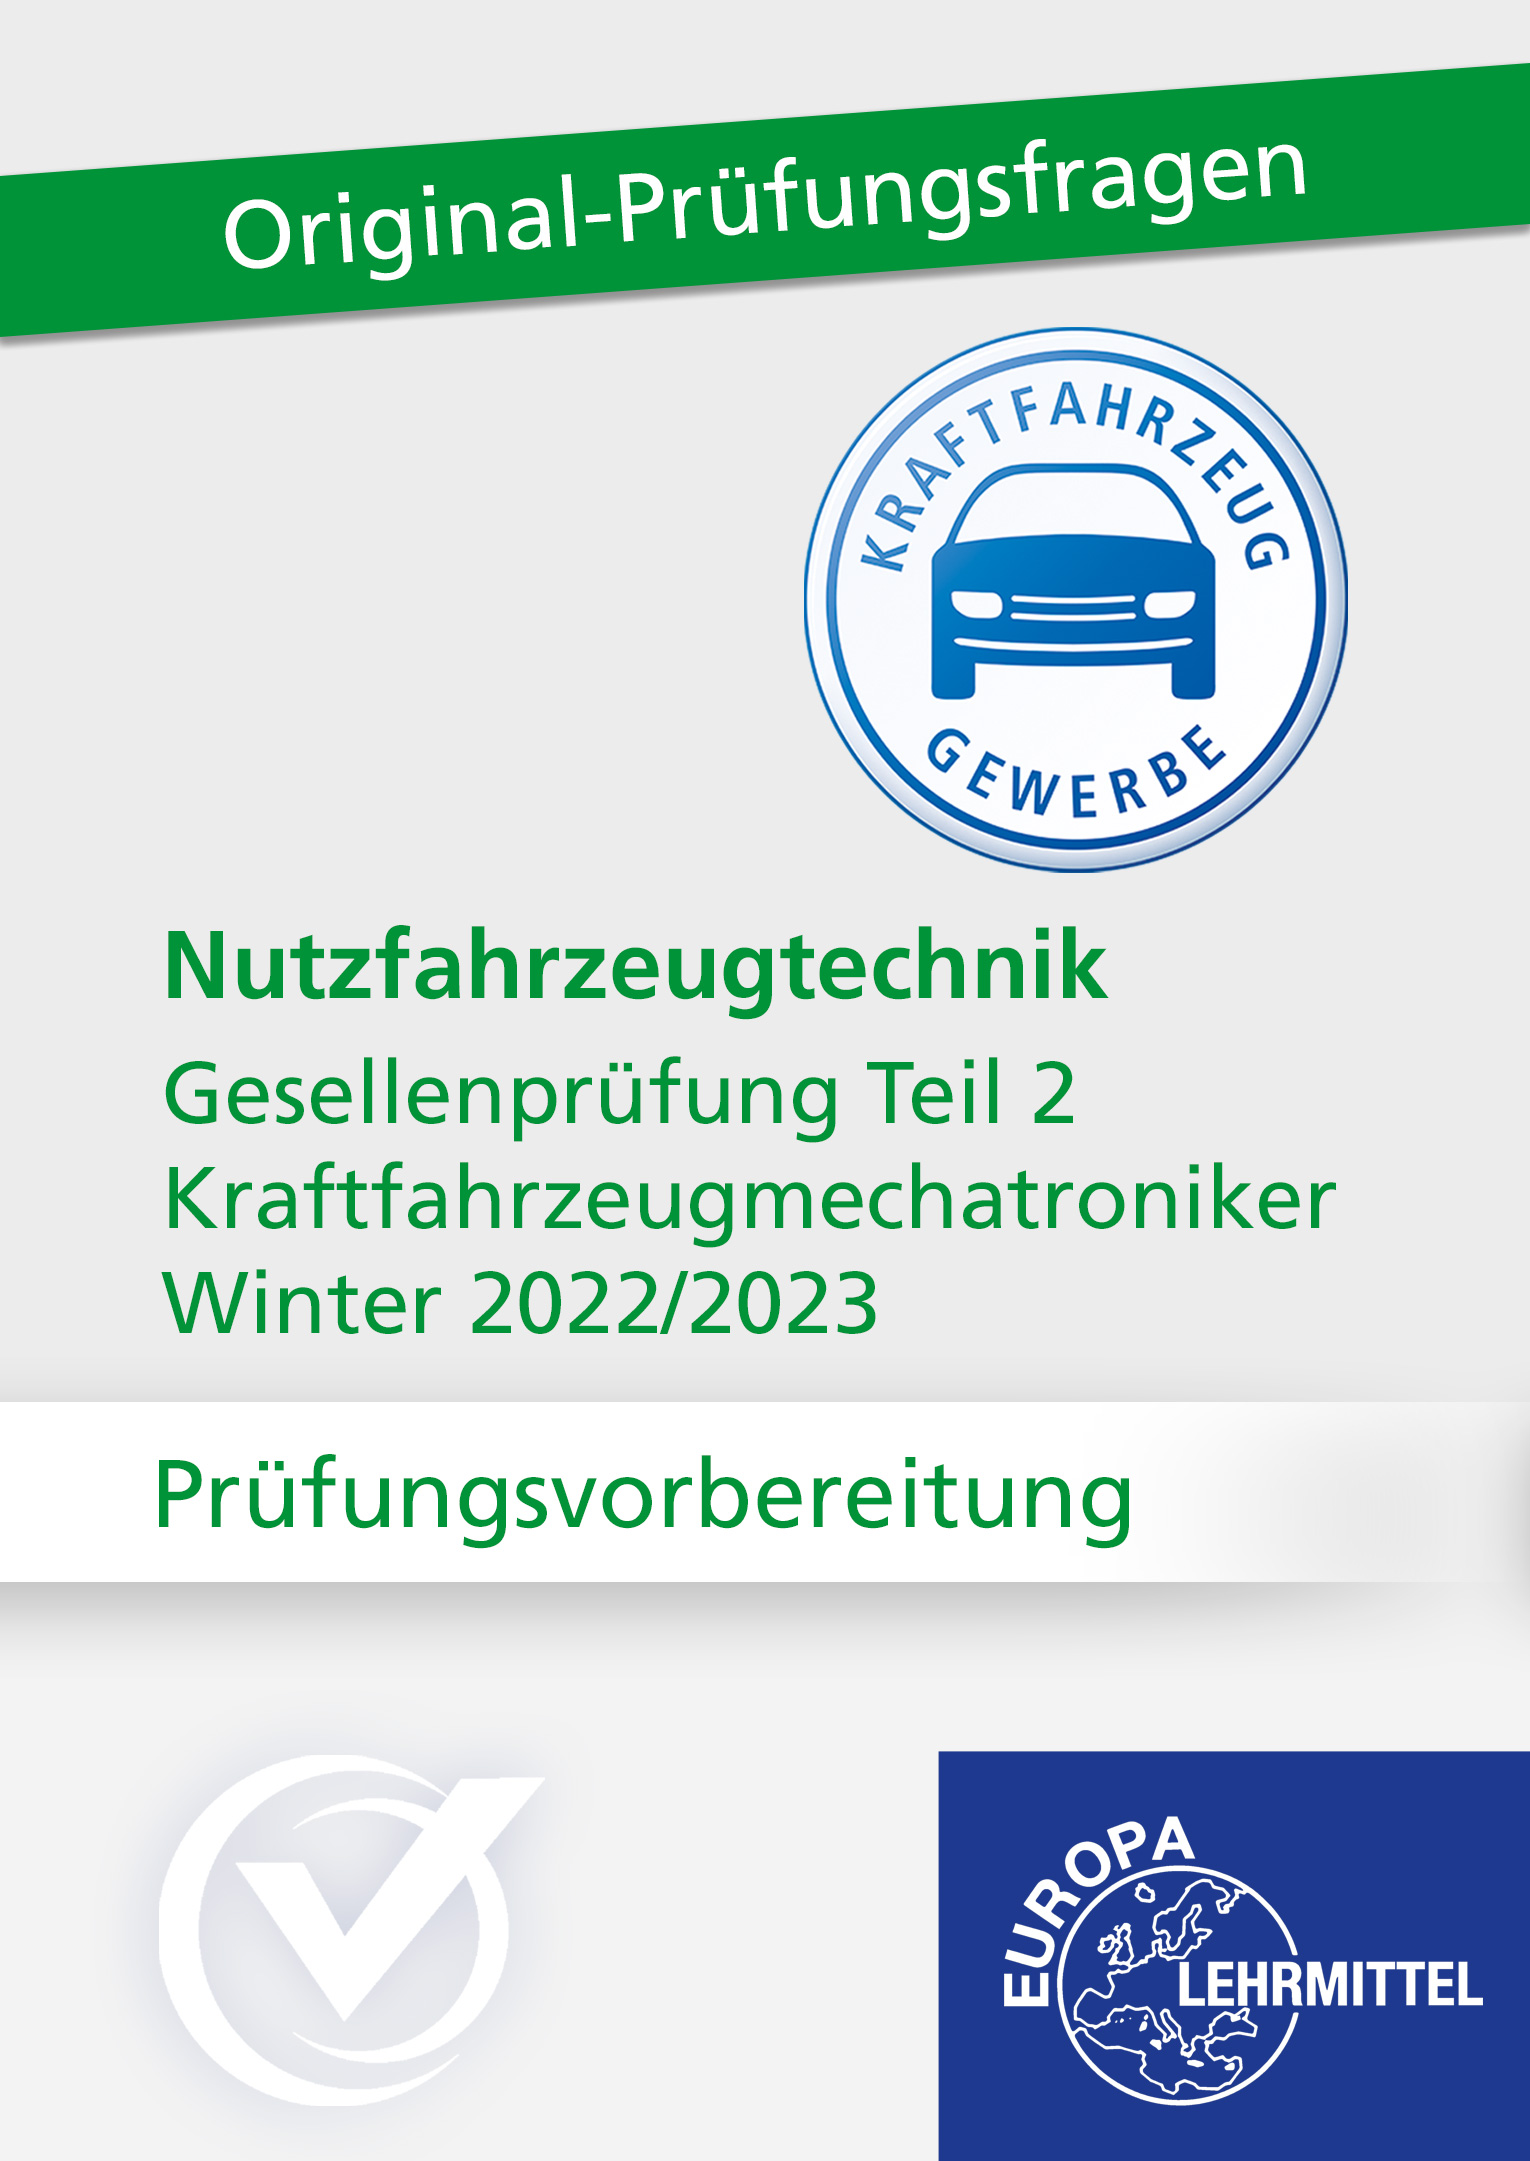 Prüfungsvorbereitung GP Teil 2 Nutzfahrzeugtechnik Winter 2022/2023 Online-Kurs